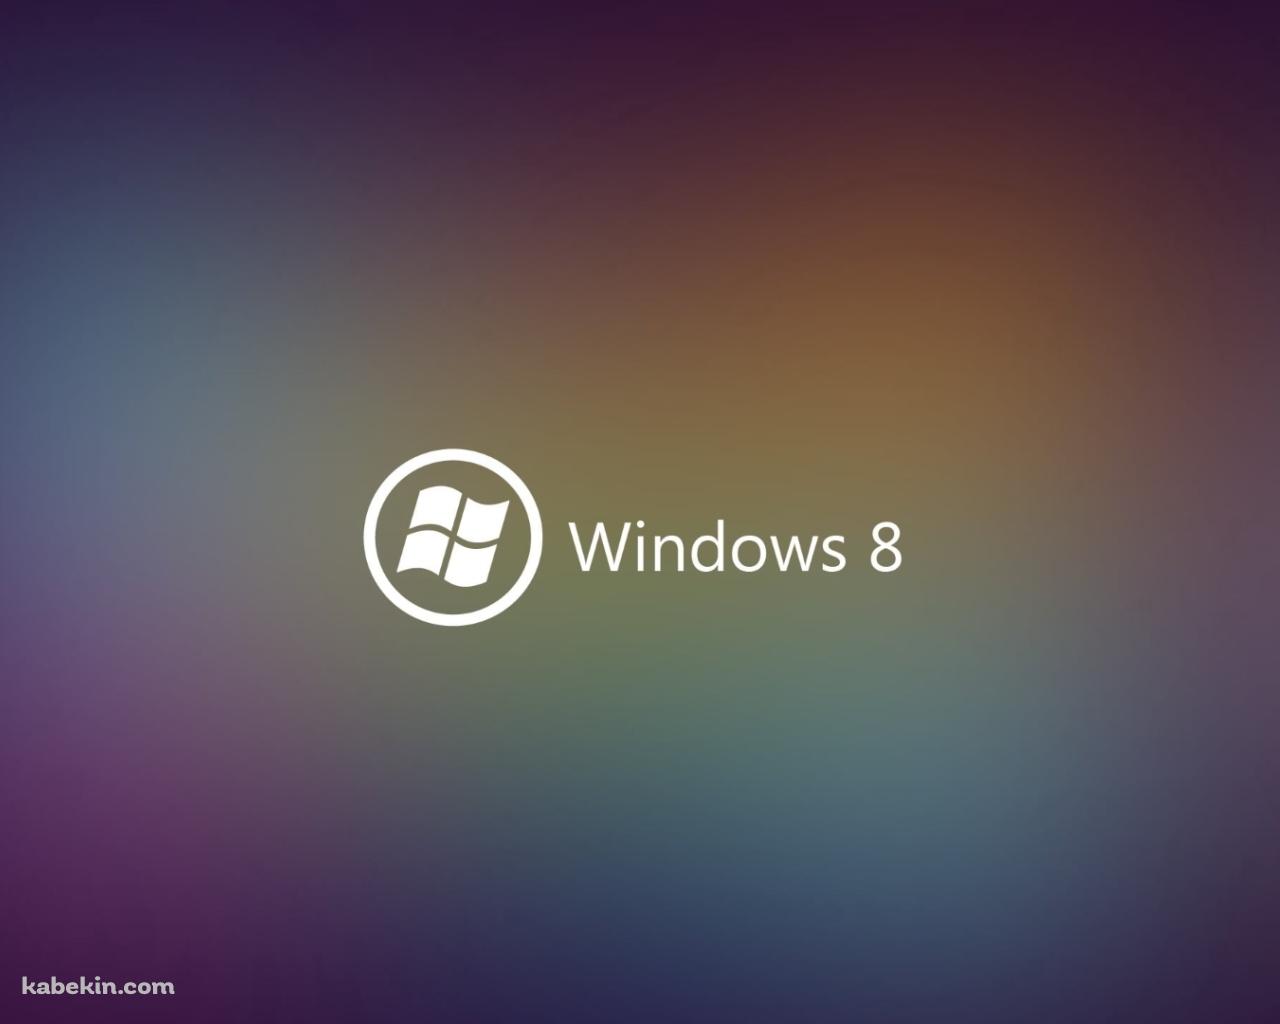 Windows 8 ブラー ロゴの壁紙(1280px x 1024px) 高画質 PC・デスクトップ用